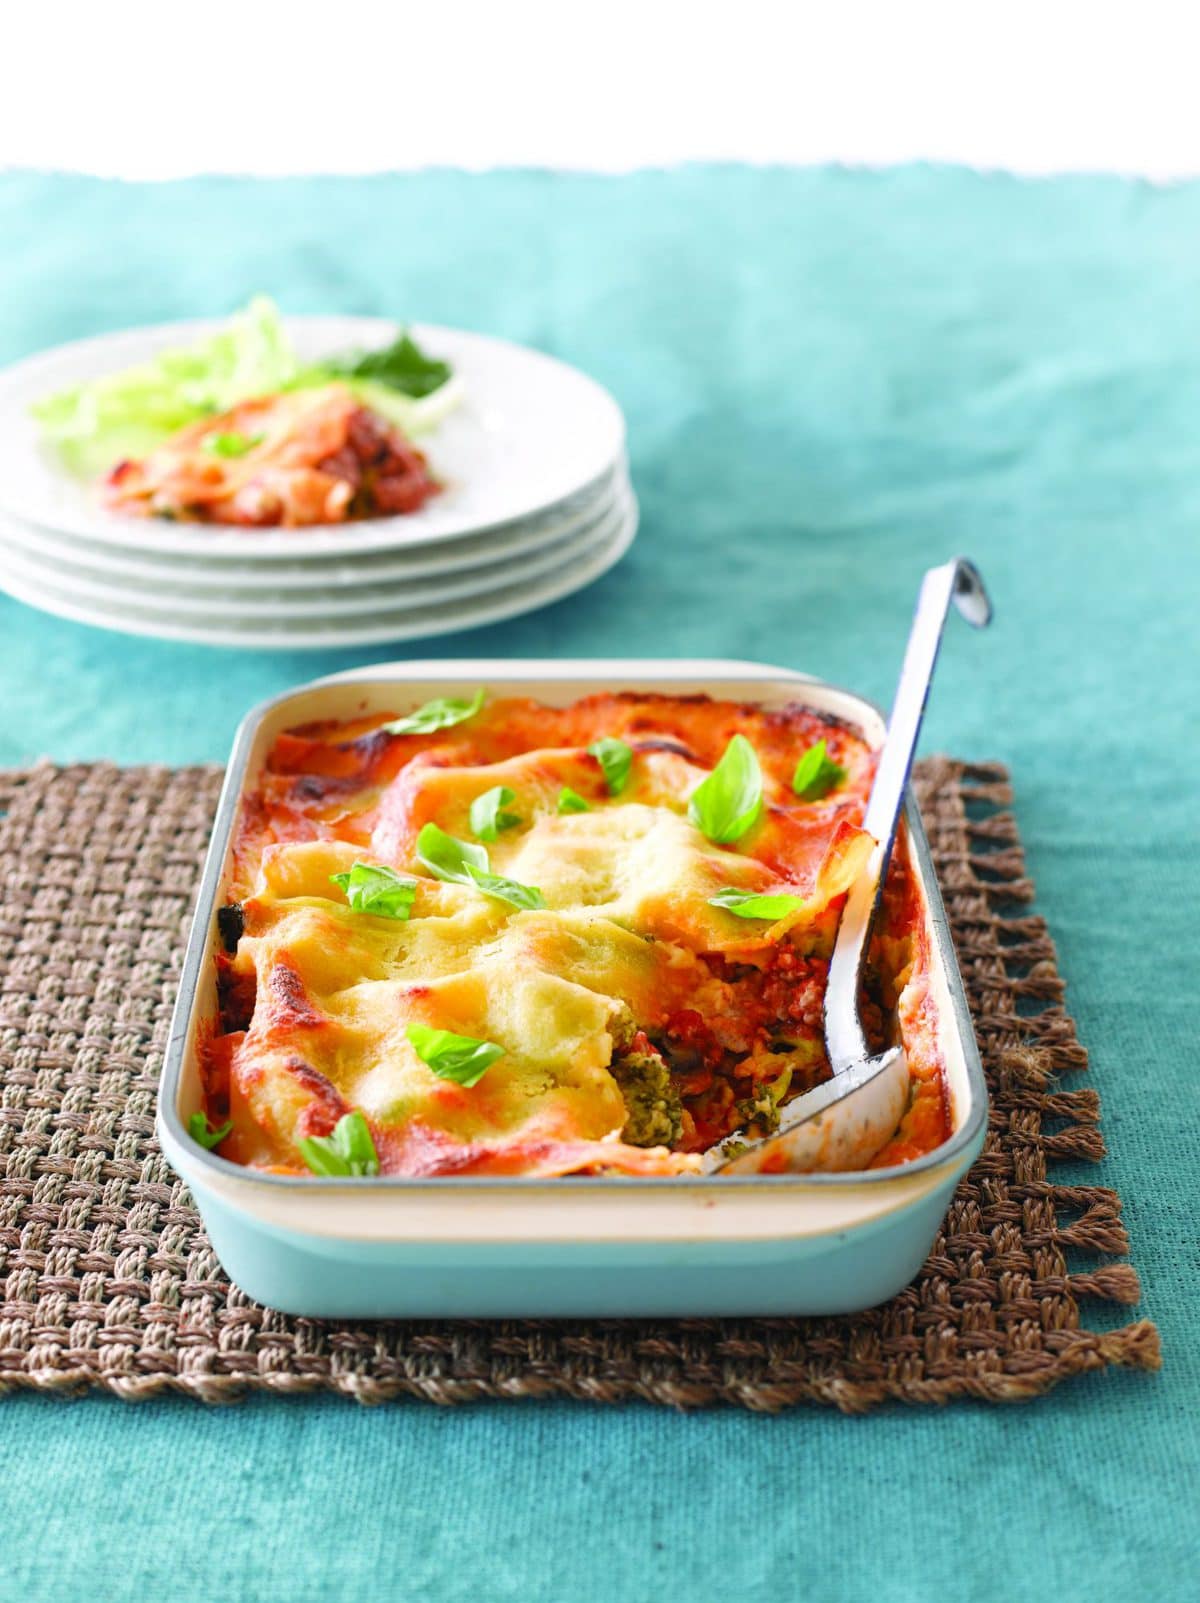 Chicken and broccoli lasagne - Healthy Food Guide